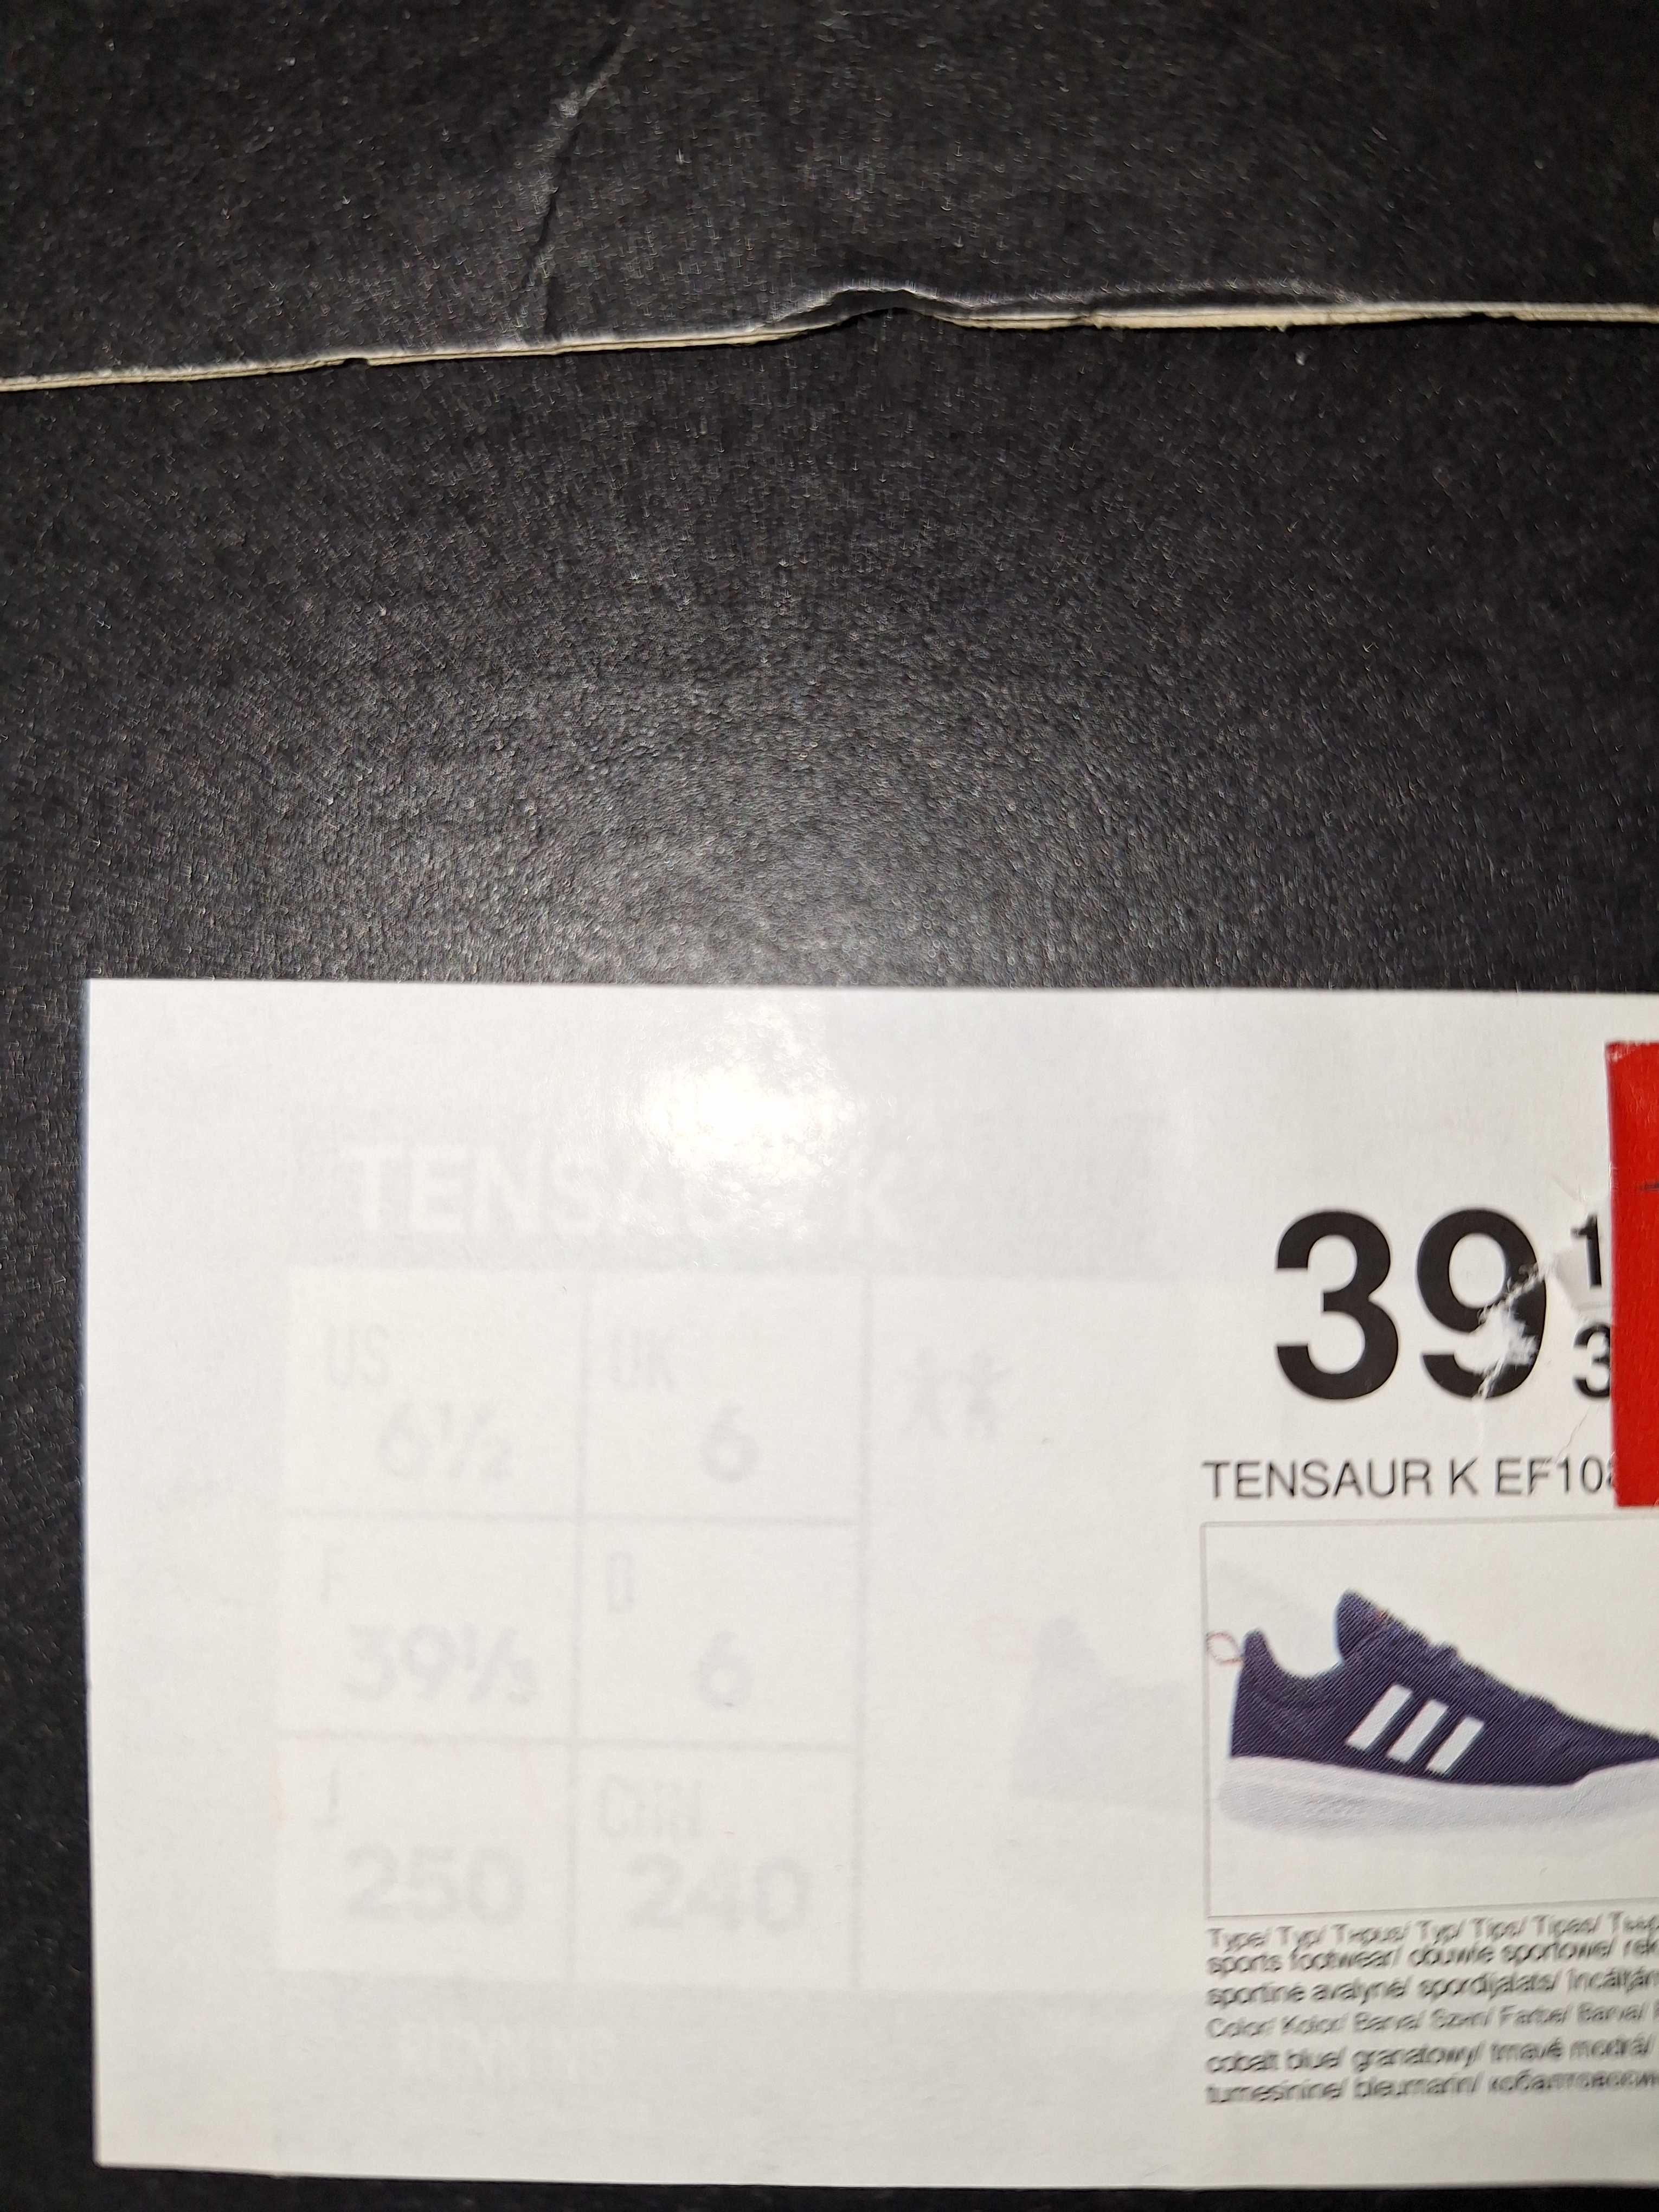 Adidasi Adidas noi cu eticheta 38 2/3